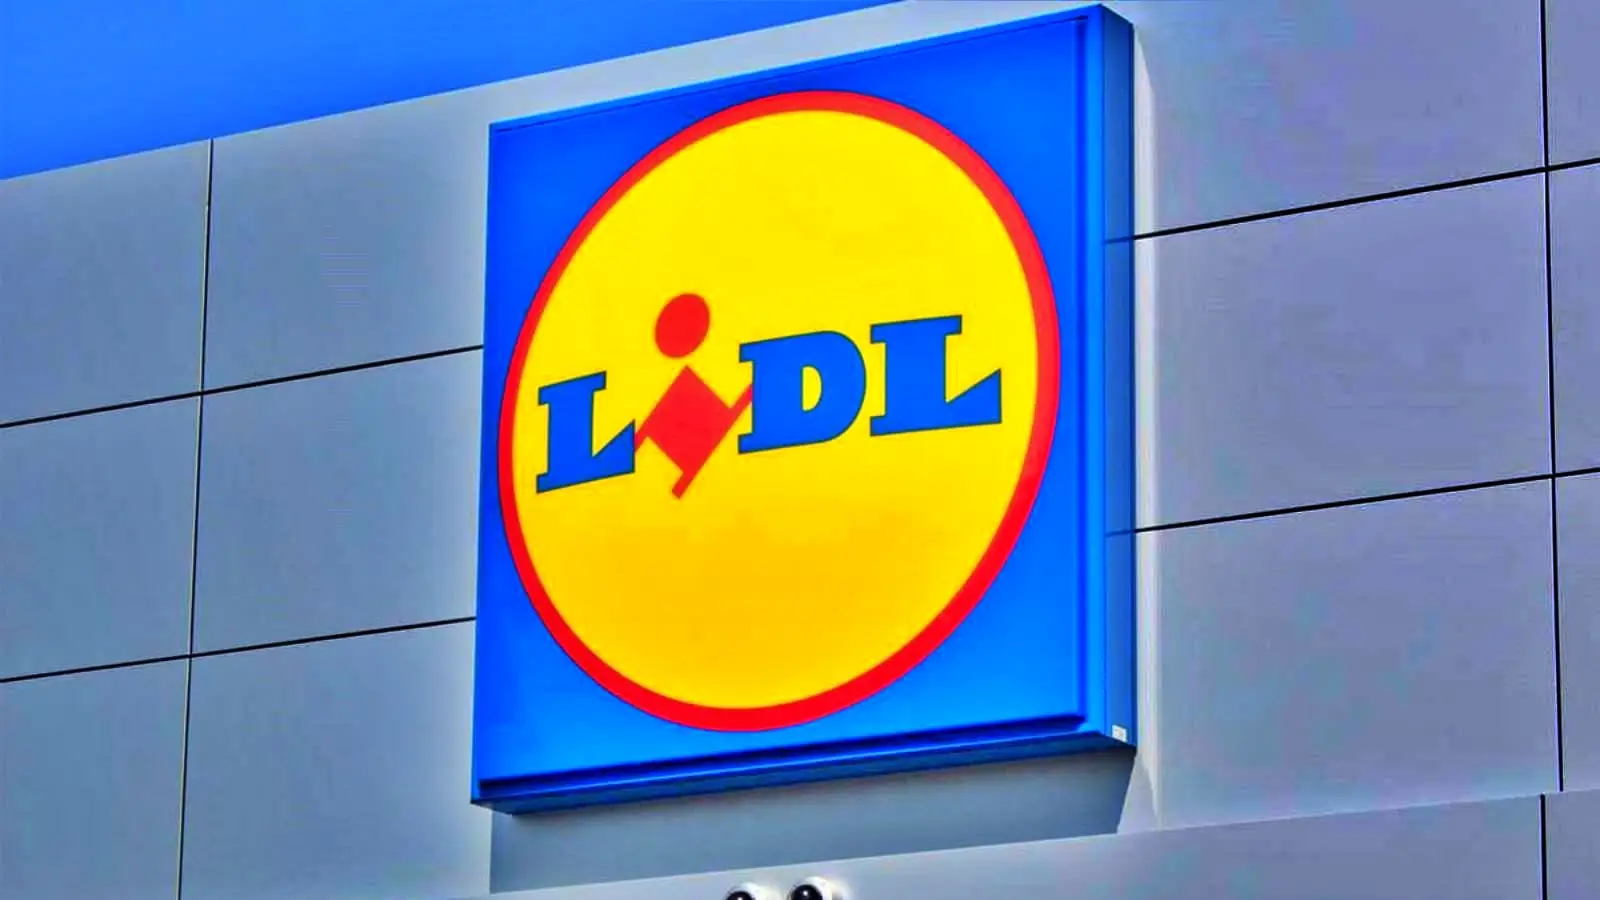 LIDL Romania avslöjar GRATIS för rumänska kunder just nu